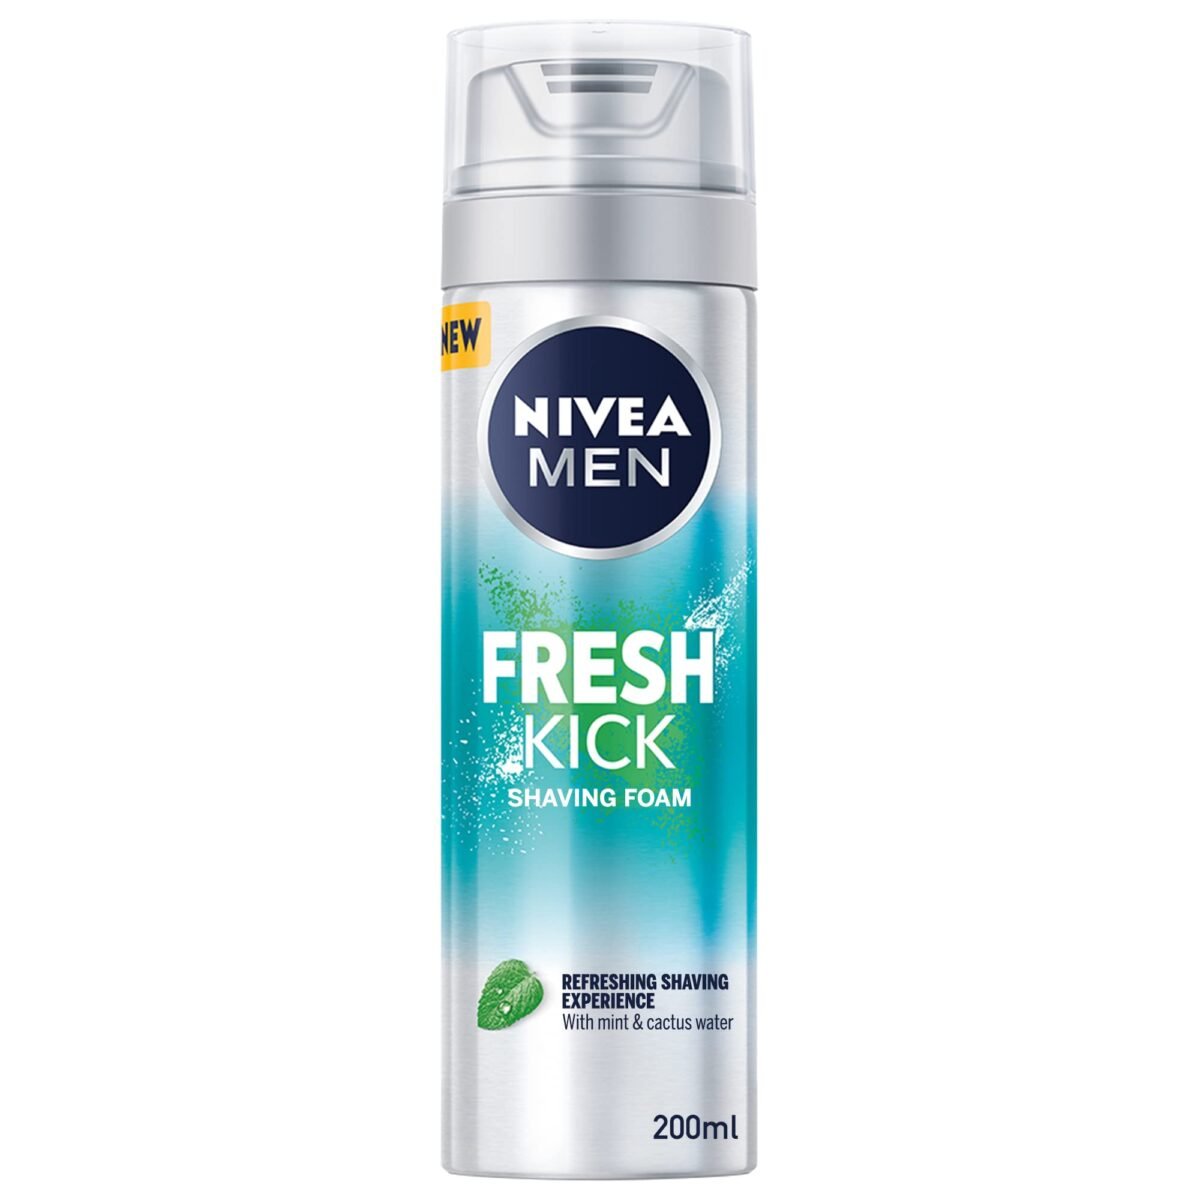 Nivea Men Fresh Kick Shaving Foam 200ml